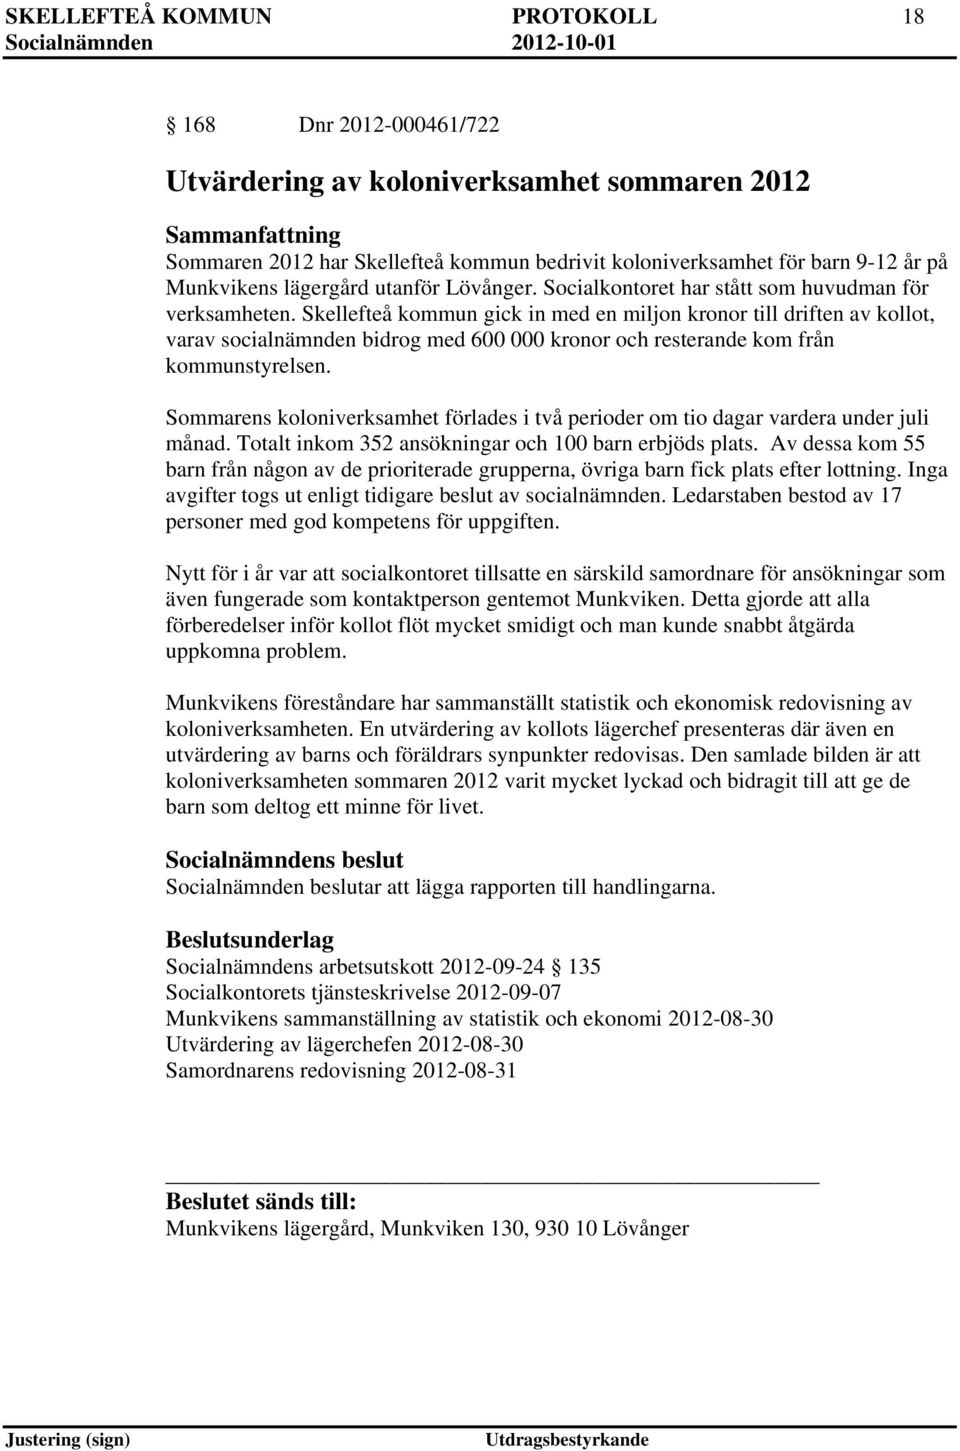 Skellefteå kommun gick in med en miljon kronor till driften av kollot, varav socialnämnden bidrog med 600 000 kronor och resterande kom från kommunstyrelsen.